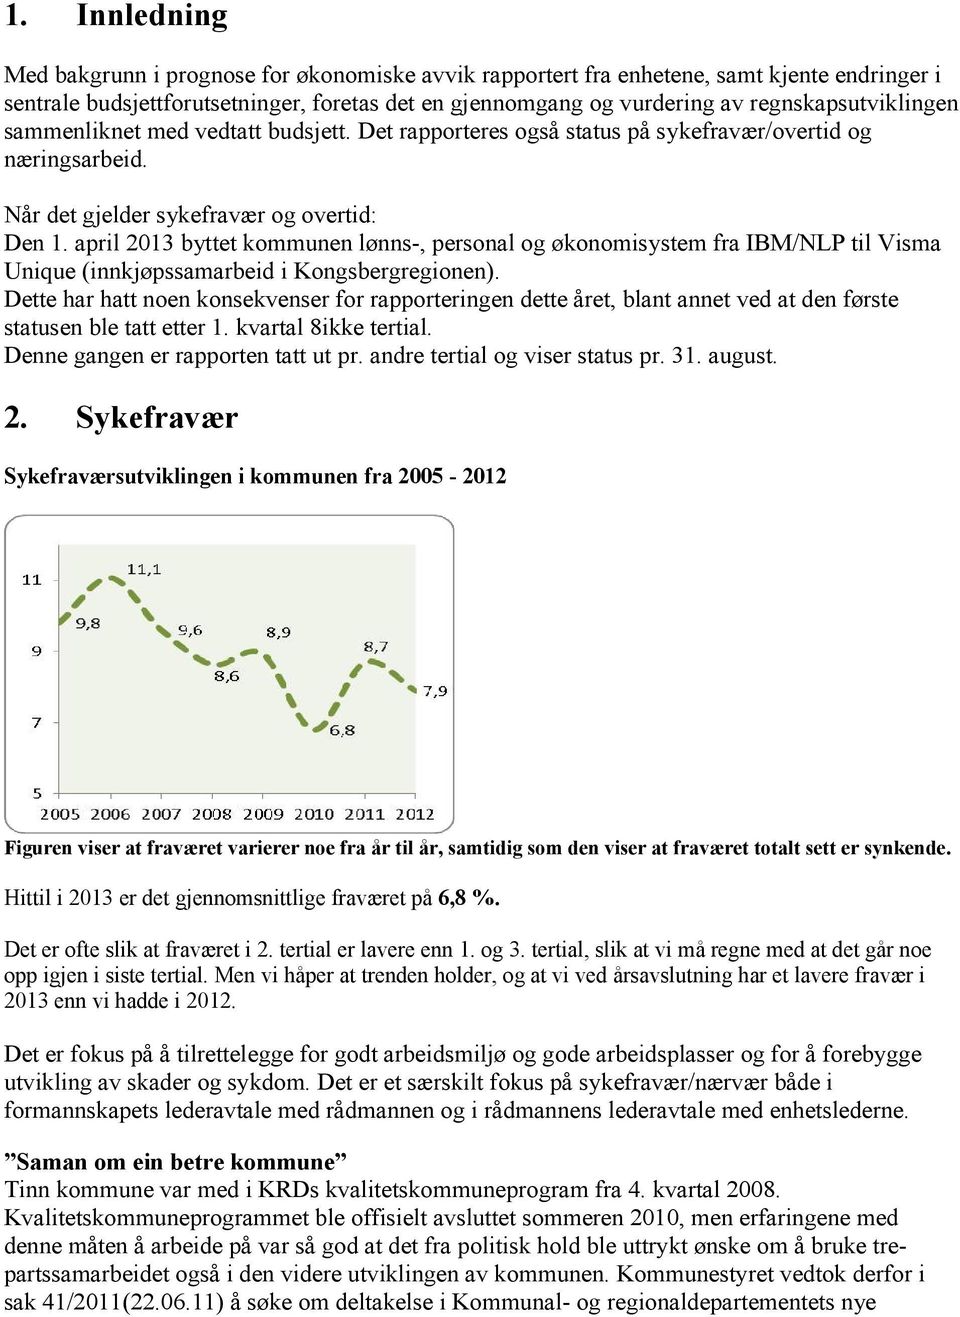 april byttet kommunen lønns-, personal og økonomisystem fra IBM/NLP til Visma Unique (innkjøpssamarbeid i Kongsbergregionen).